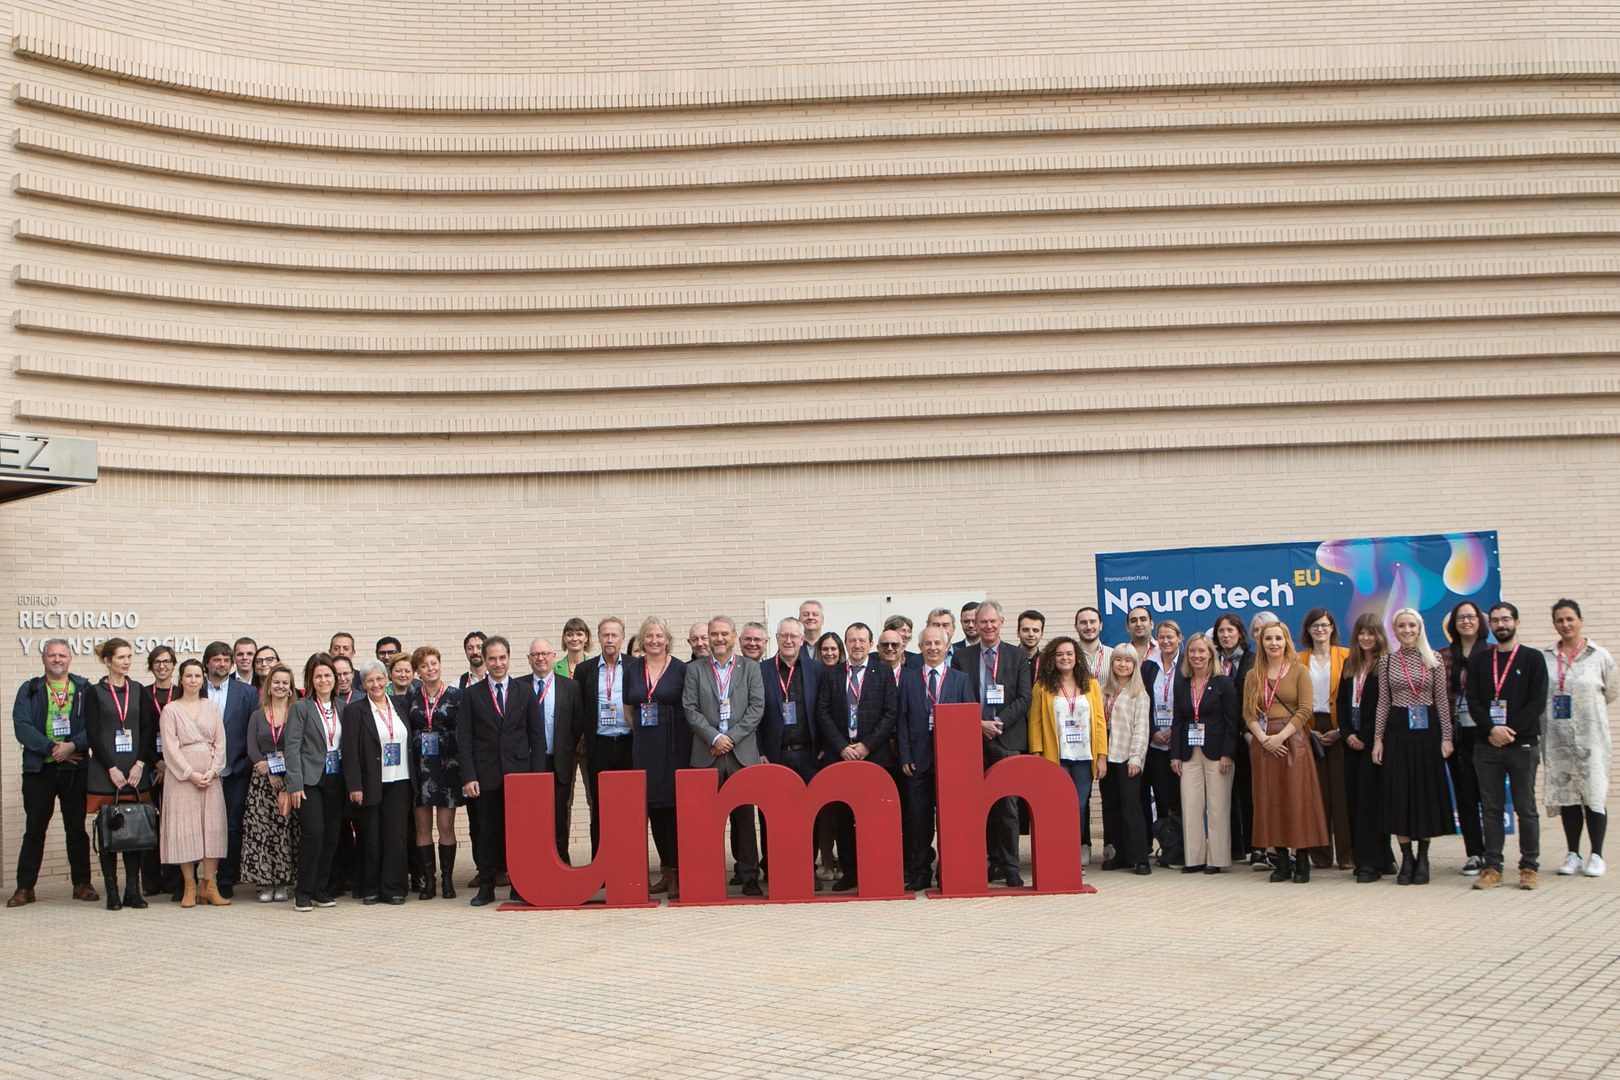 Die Teilnehmerinnen und Teilnehmer des Treffens vor einem Gebäude der Universitas Miguel Hernández in Alicante. - Im Fokus des Treffens stand der Folgeantrag, der im Falle einer Bewilligung zu einer Verlängerung der EU-Finanzierung um weitere vier Jahre führt.